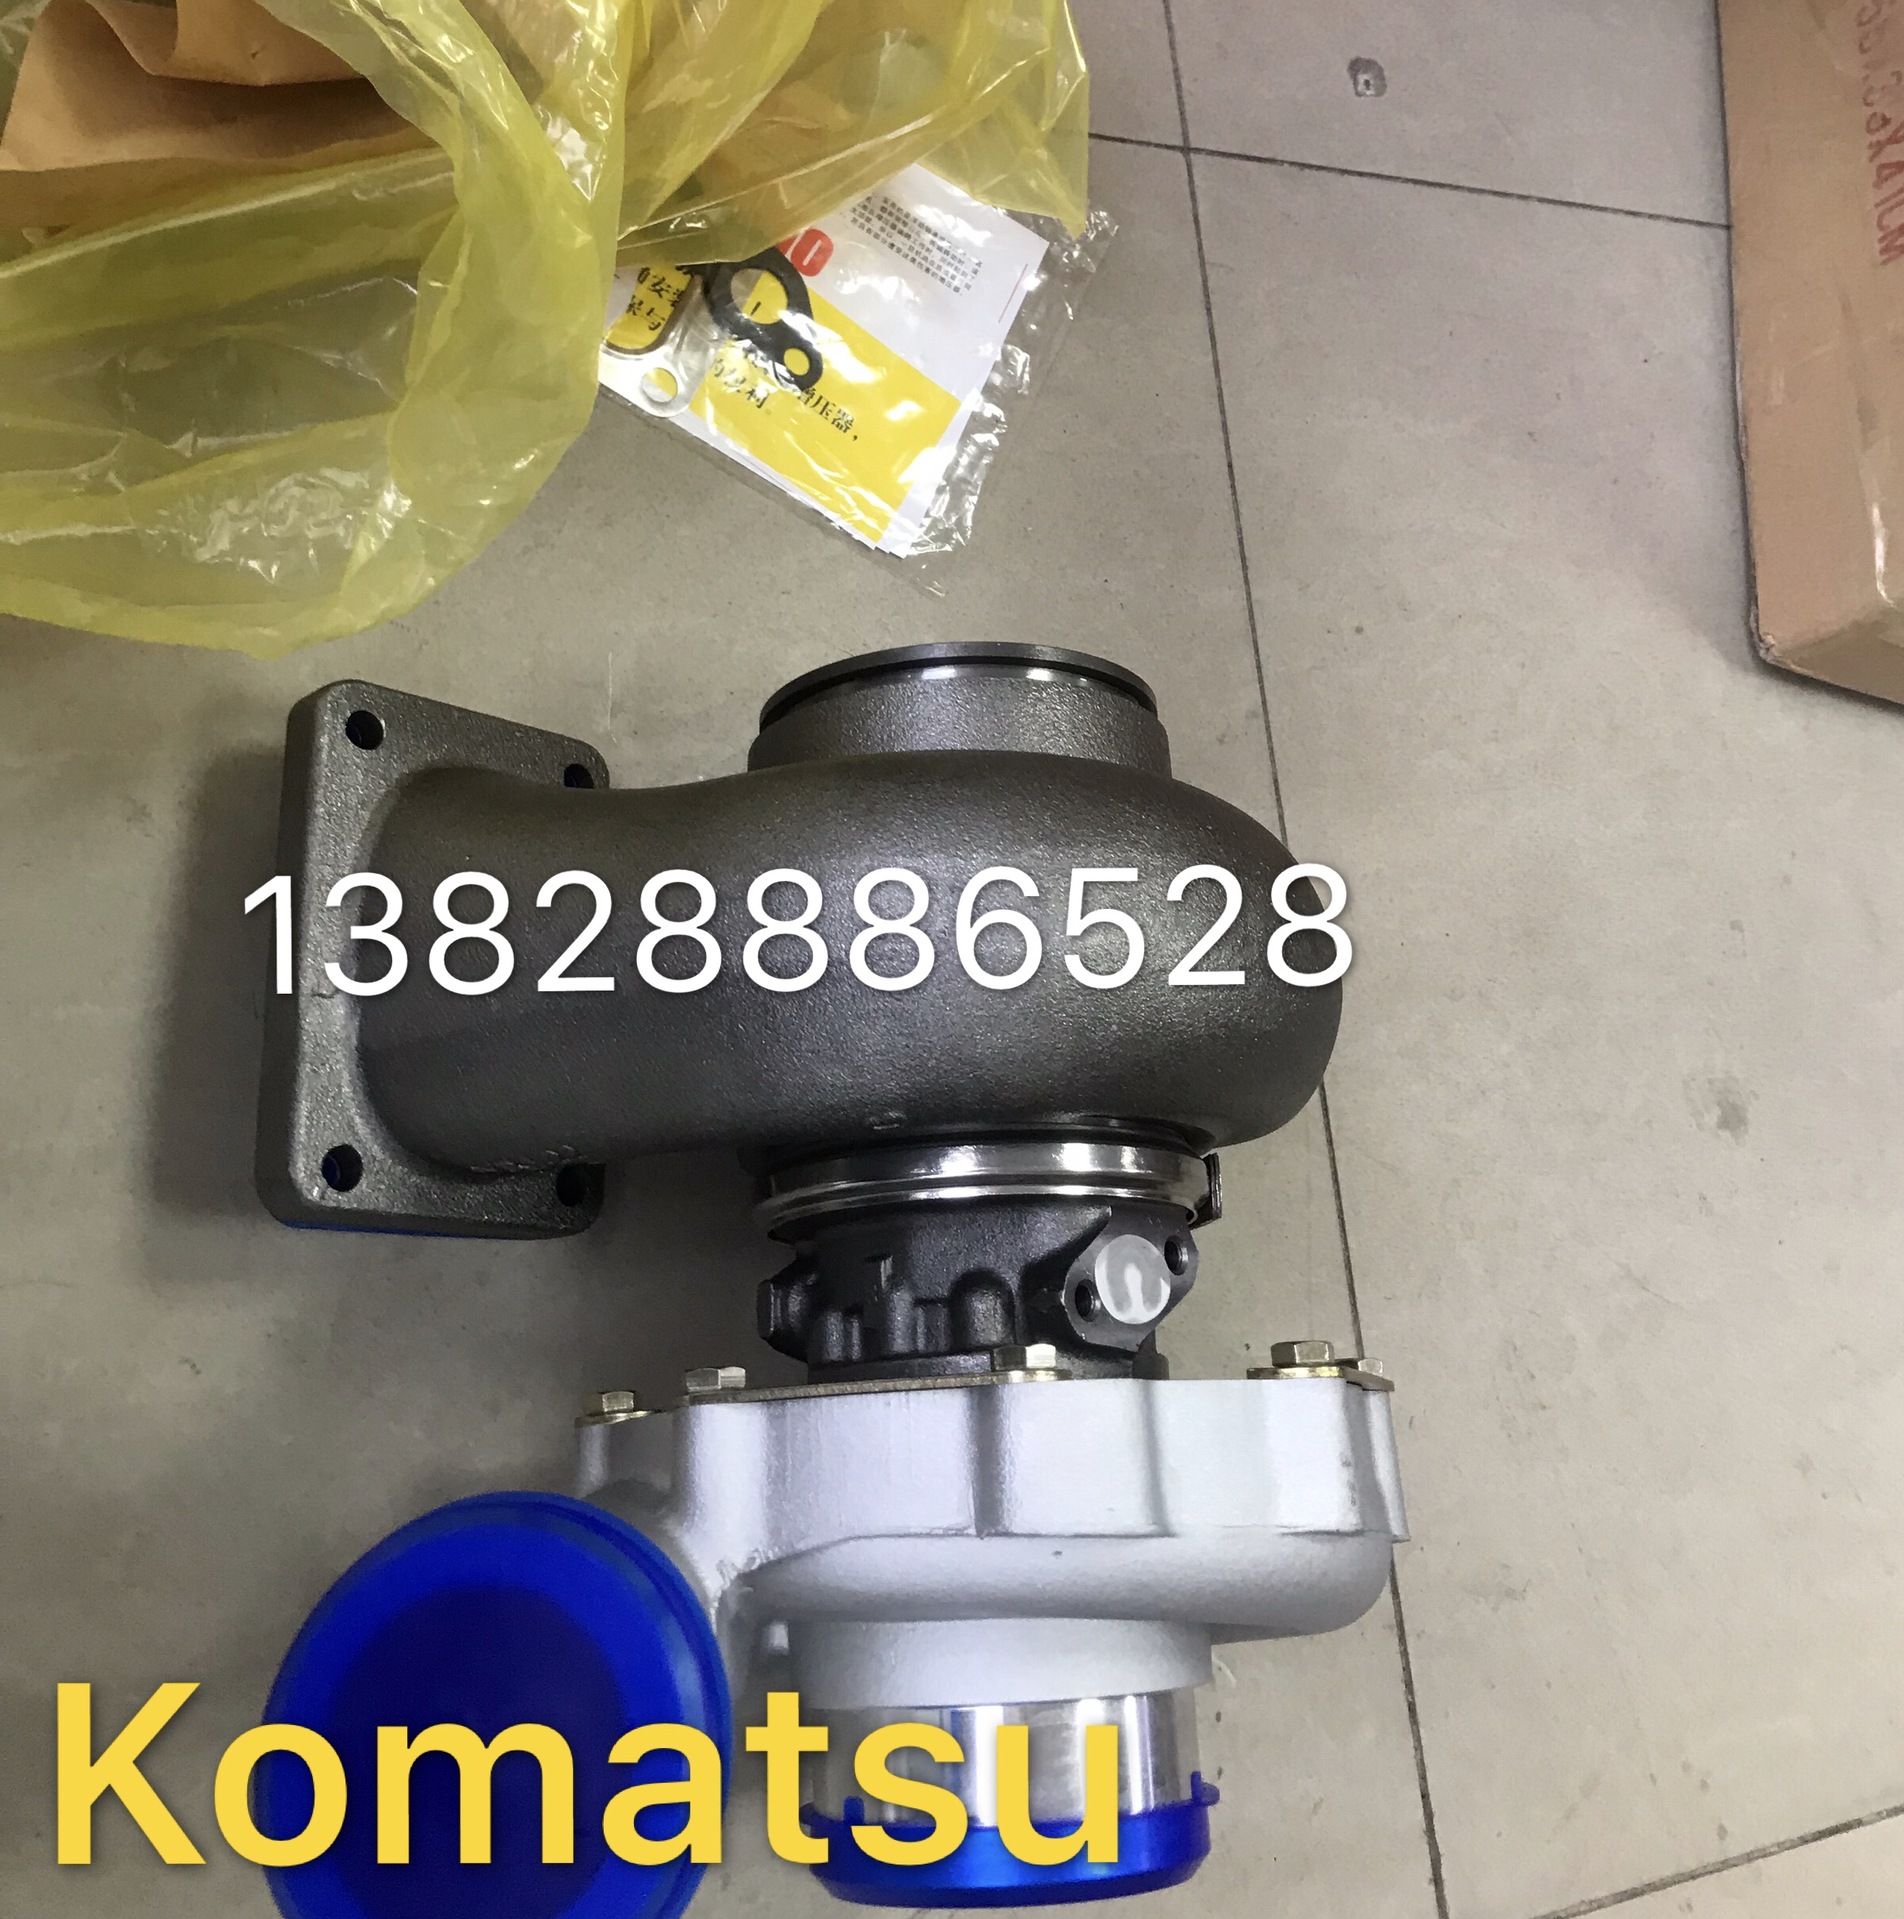 KOMATSU小松柴油发动机全套配件活塞缸套活塞环连杆增压器修理包示例图3